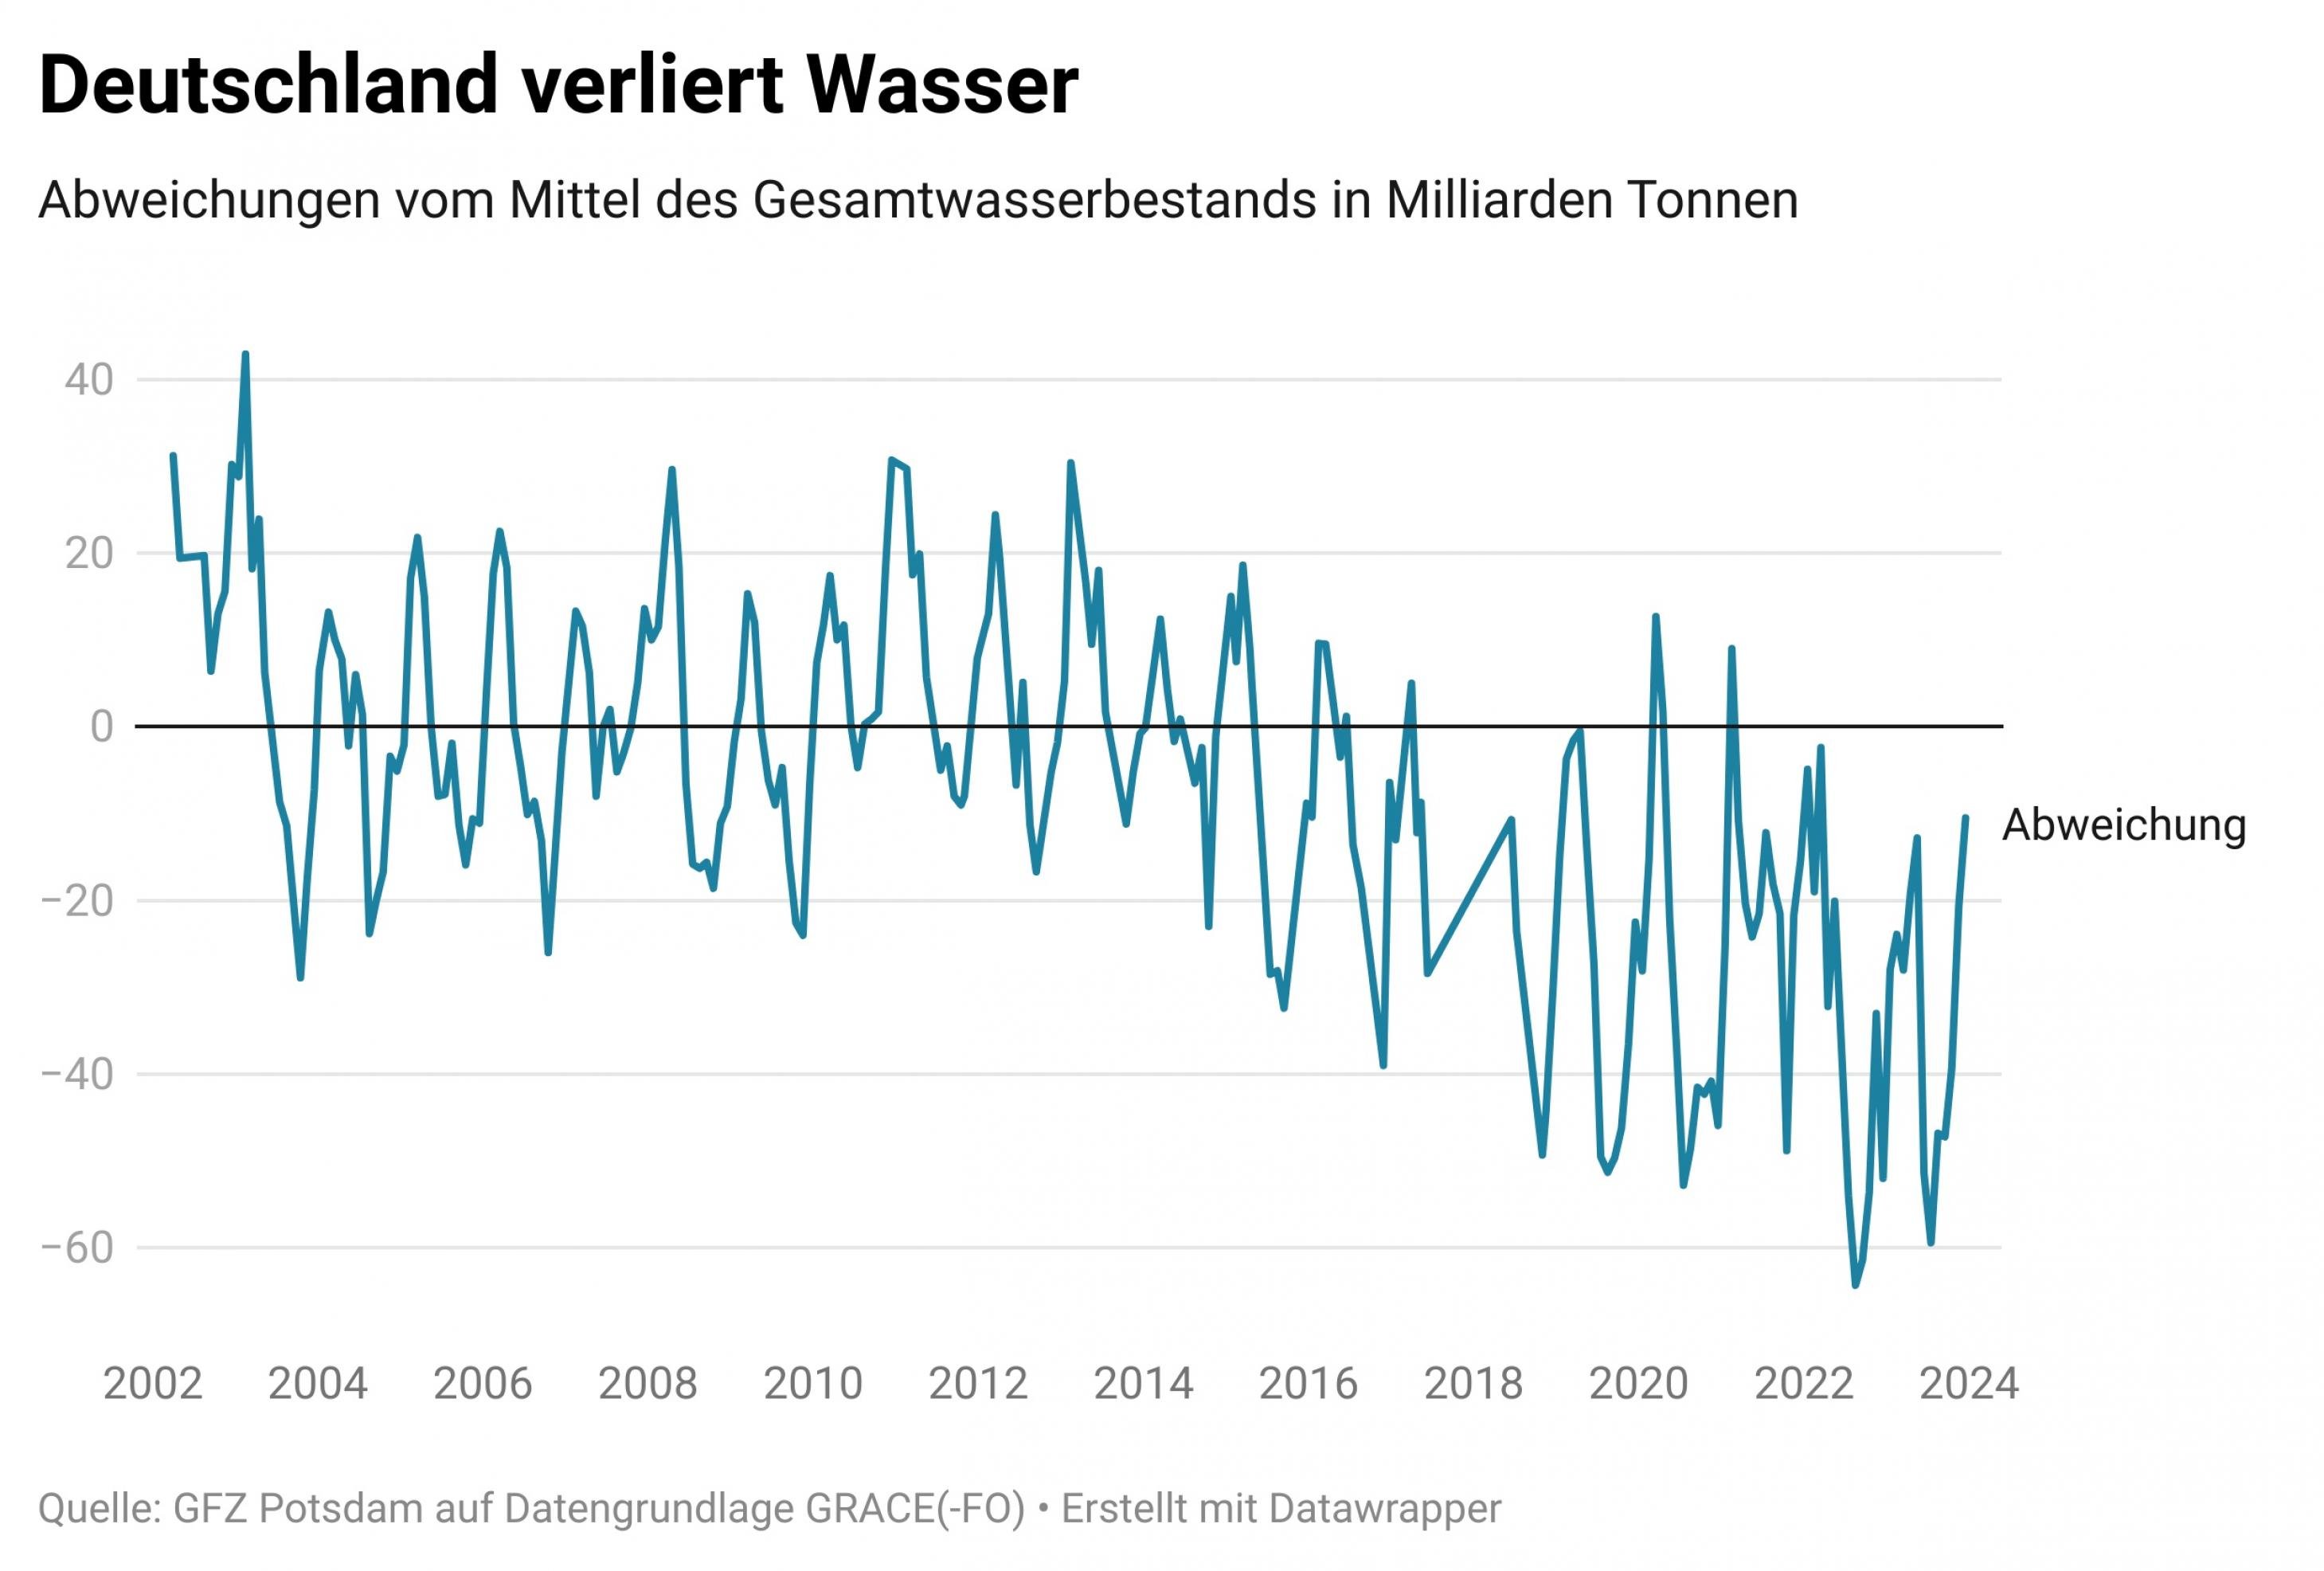 Graphik zeigt Trend des Gesamtwasserspeichers in Deutschland von 2002 bis Ende 2023. Die Kurve geht jedes Jahr im Winter zackig nach oben, wenn sich der Gesamtwasserspeicher erholt und im Sommer nach unten. Insgesamt gibt es einen Abwärtstrend.